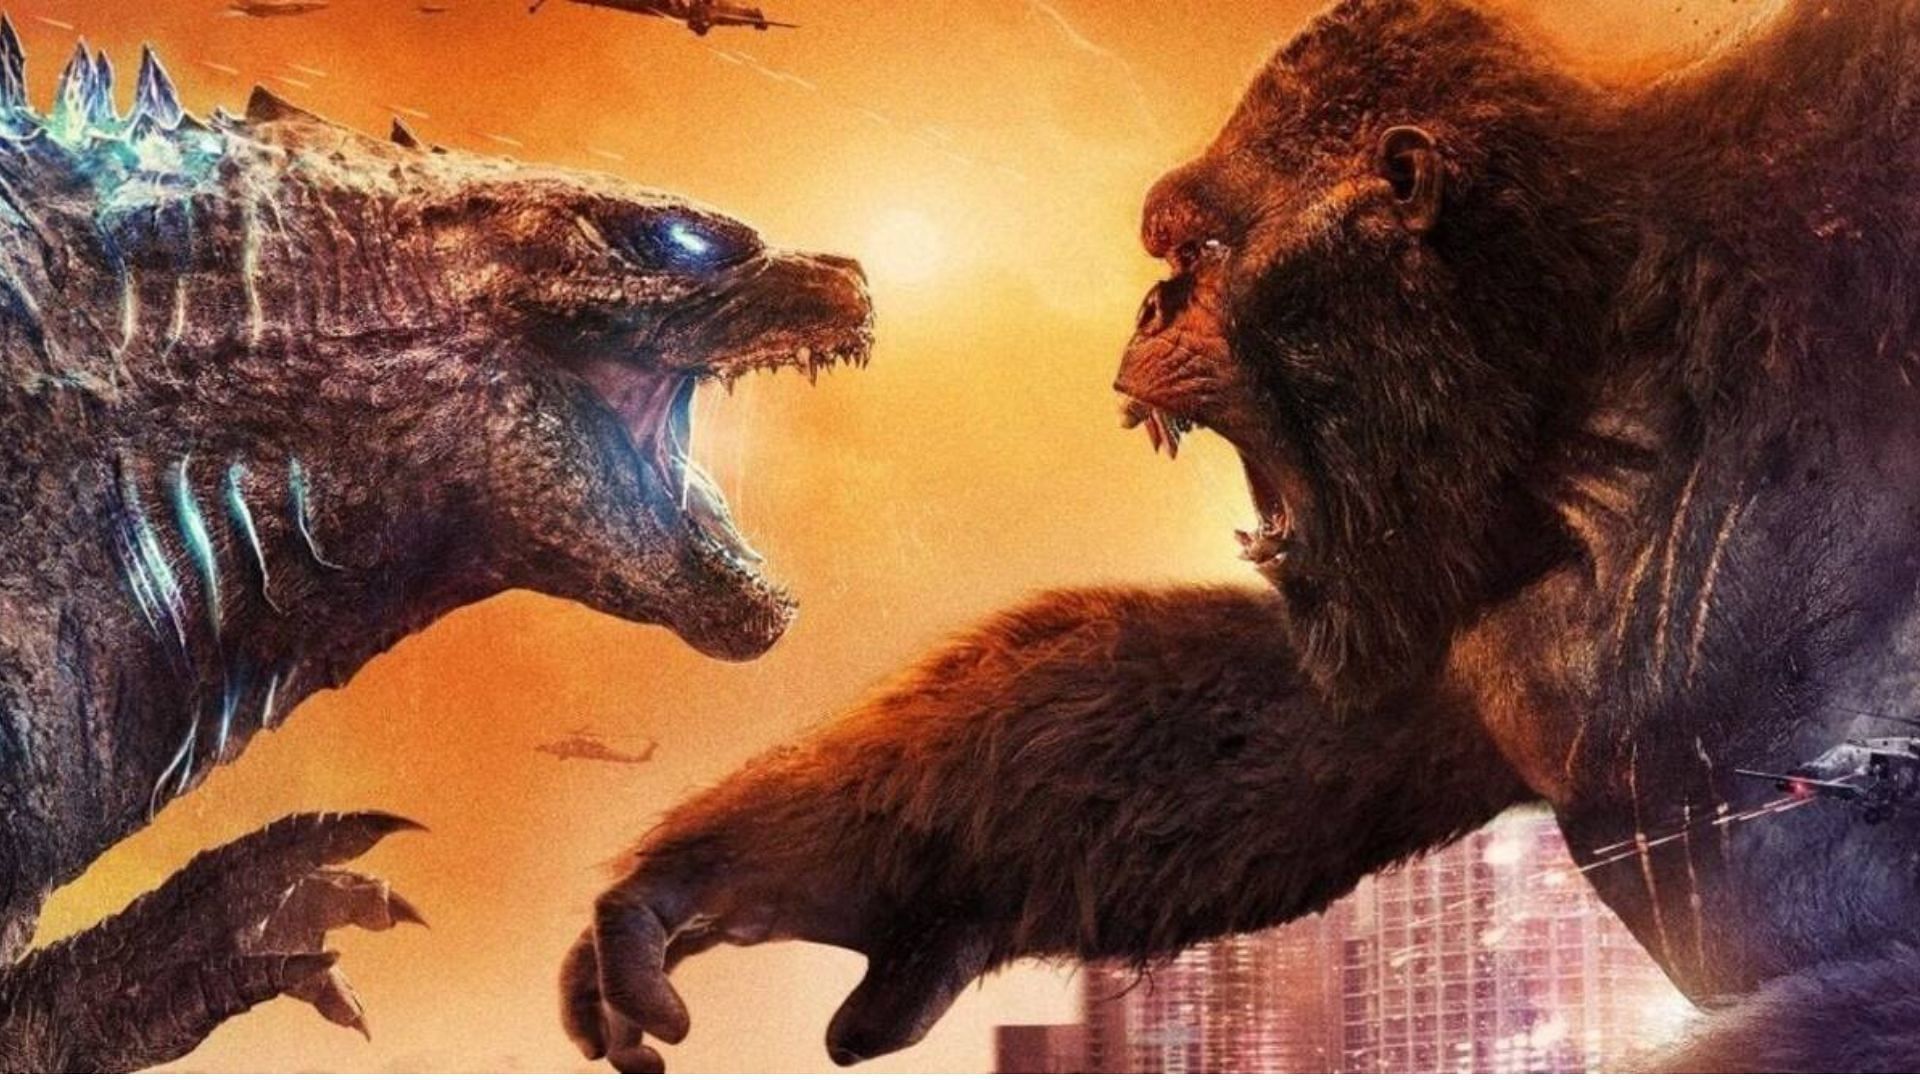 Godzilla vs. Kong (image via IMDB)